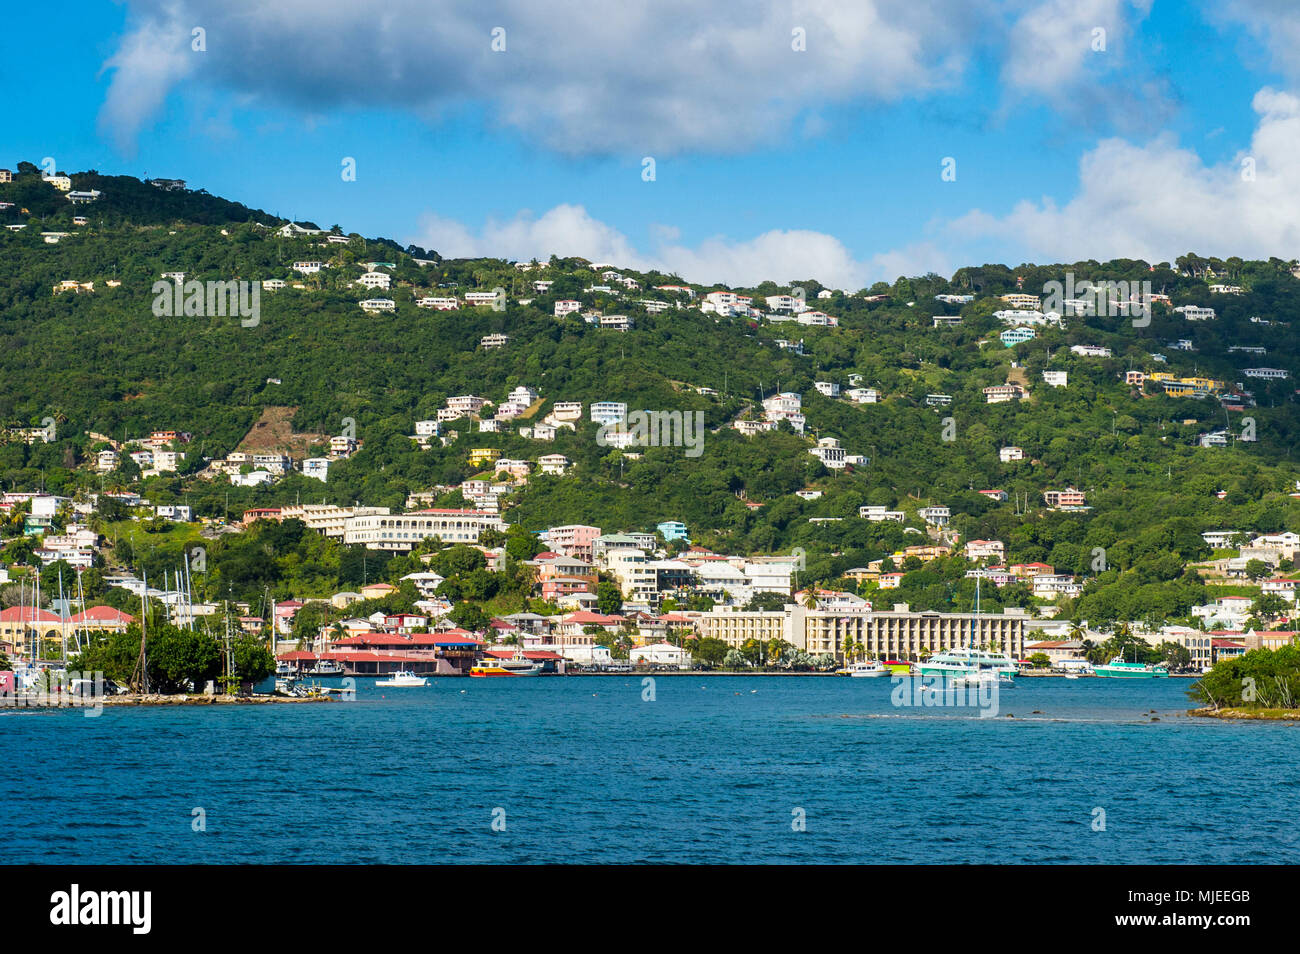 Charlotte Amalie capitale de Saint Thomas vu de l'océan, US Virgin Islands Banque D'Images